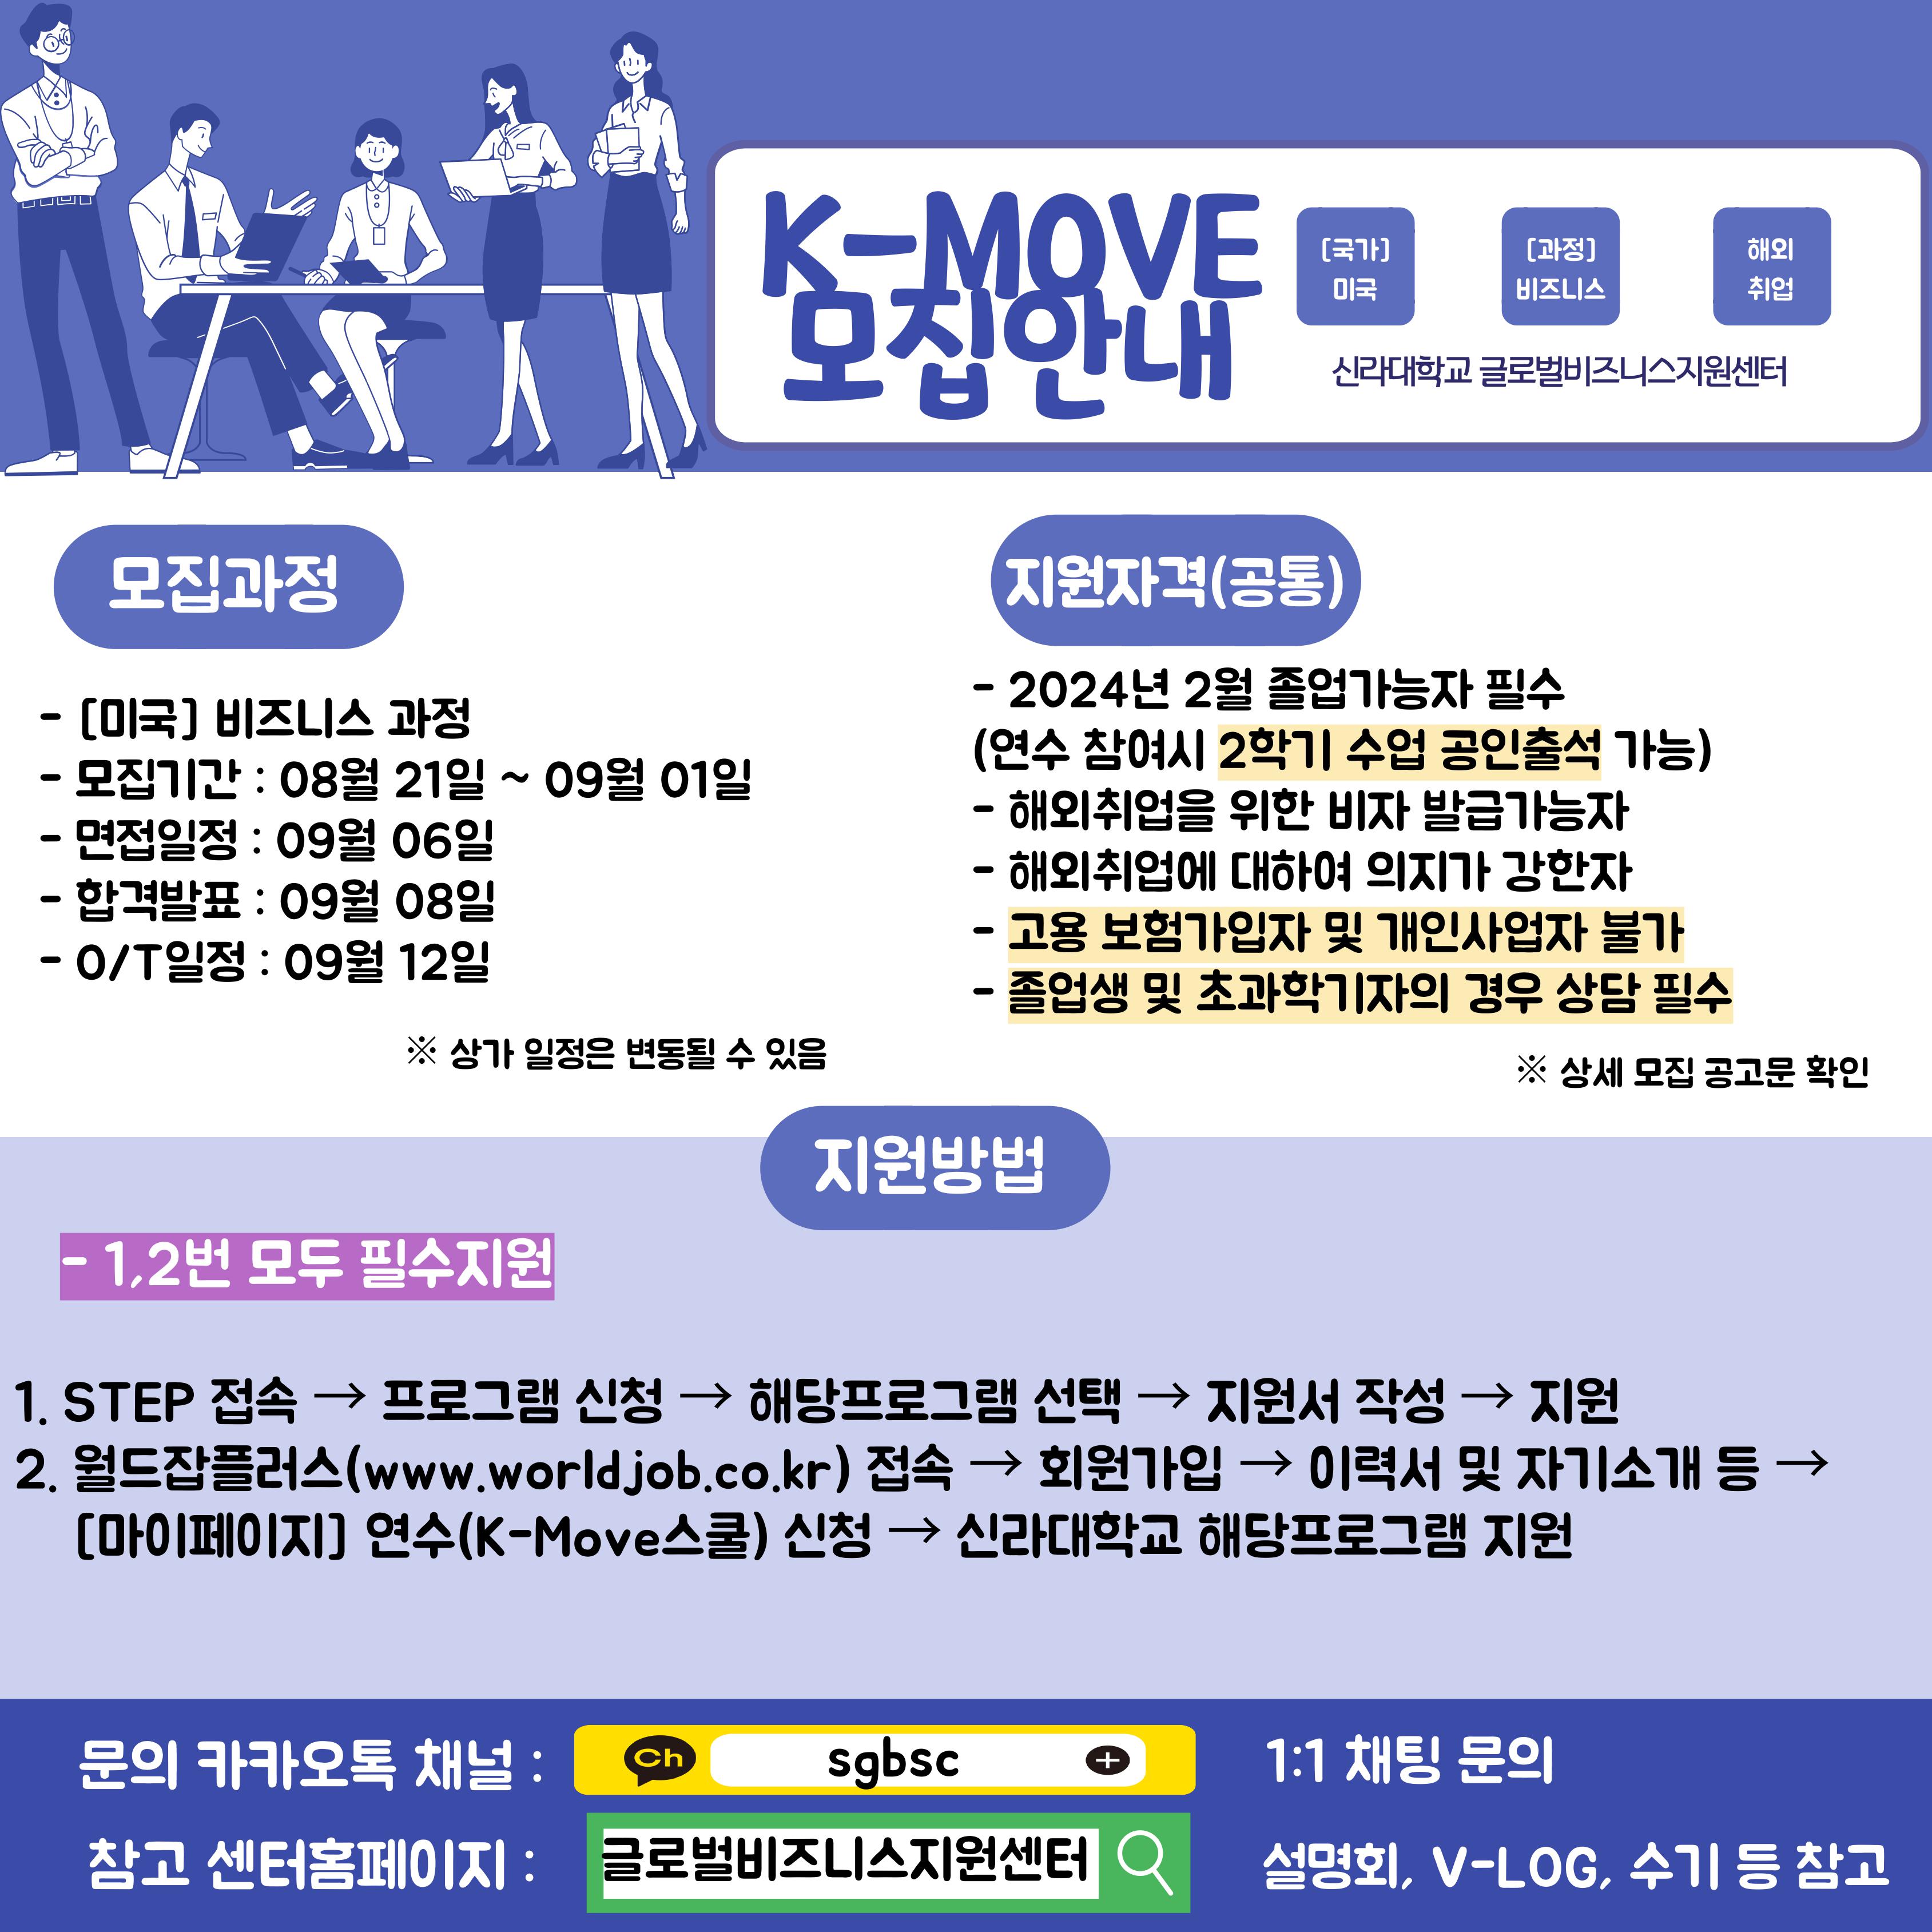 [글로벌센터]2023년 해외취업연수 K-MOVE 모집 안내 첨부파일  - 페이지 원본 홍보자료_1.jpg